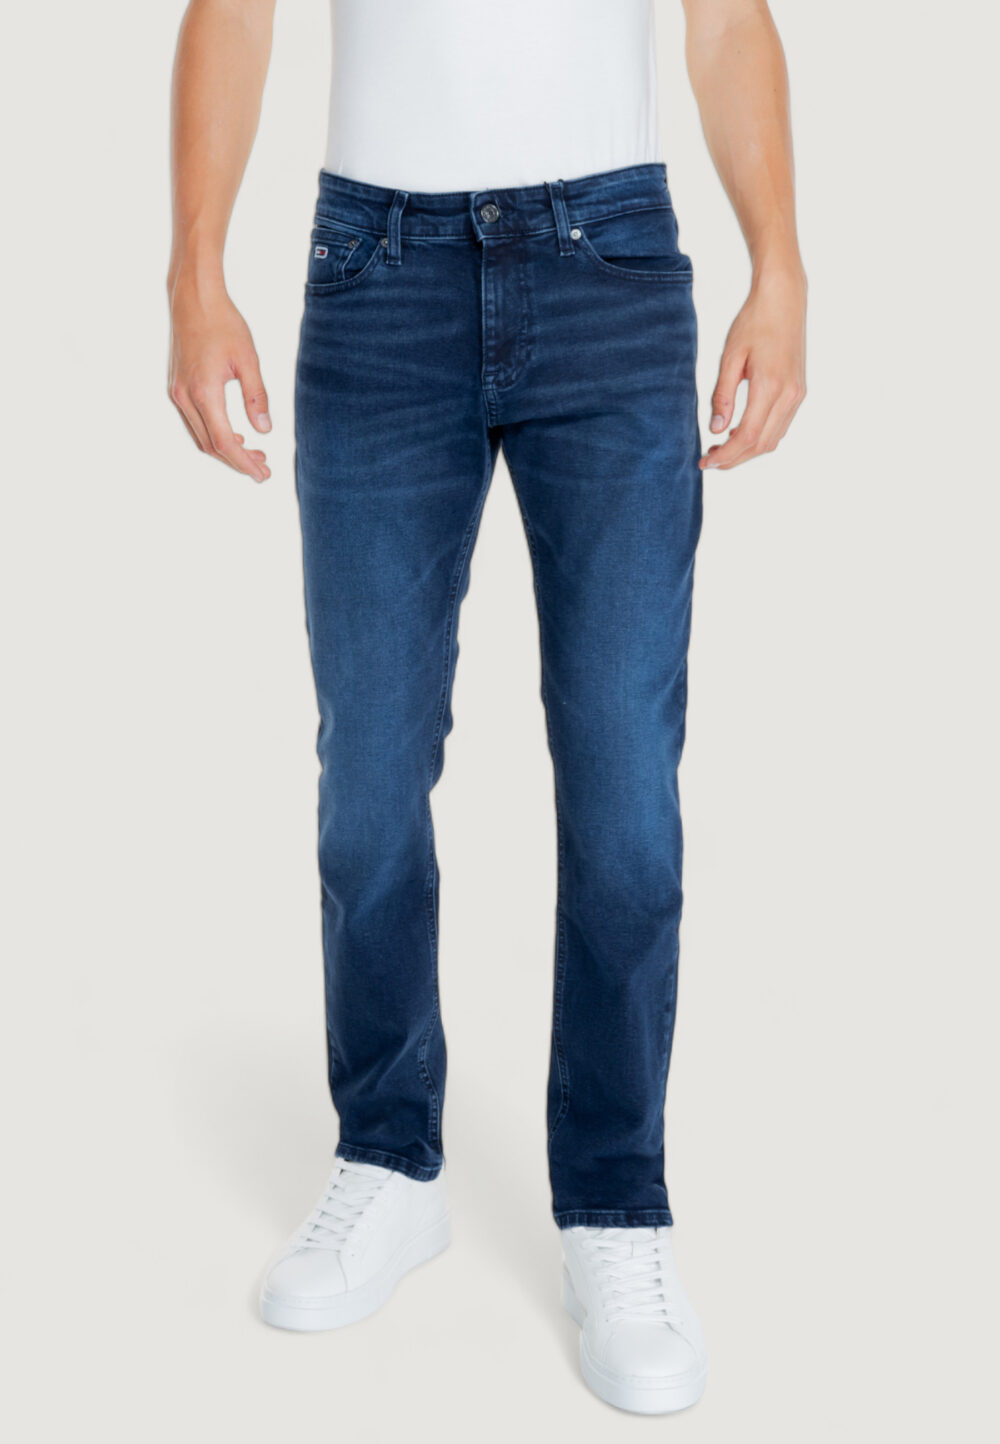 Jeans slim Tommy Hilfiger SCANTON CH1263 Denim scuro - Foto 1